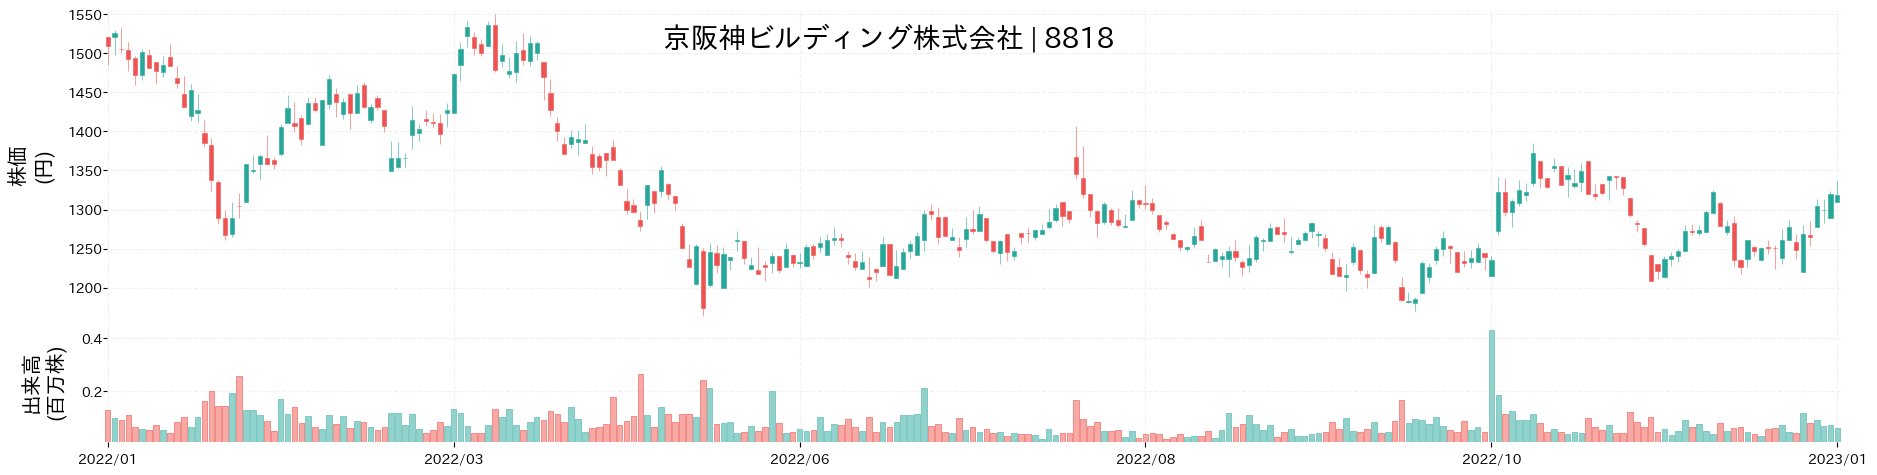 京阪神ビルディングの株価推移(2022)